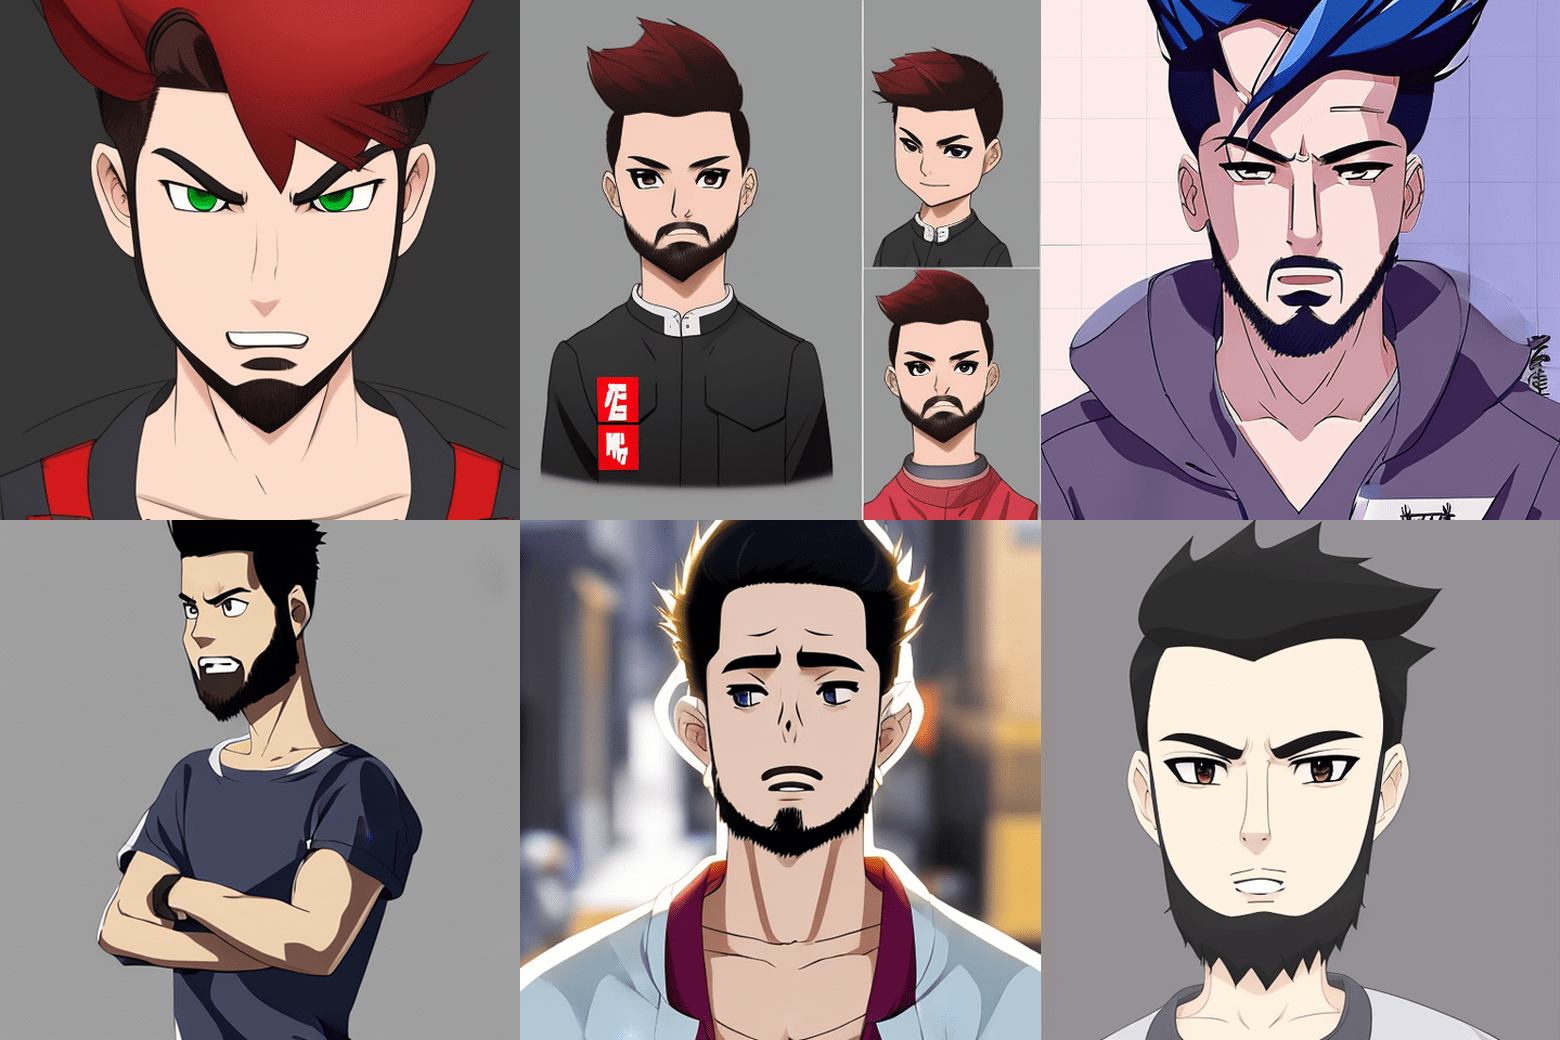 شش تصویر ایجاد شده توسط هوش مصنوعی از نویسنده مقاله که به عنوان شخصیت های مختلف انیمه طراحی شده اند.